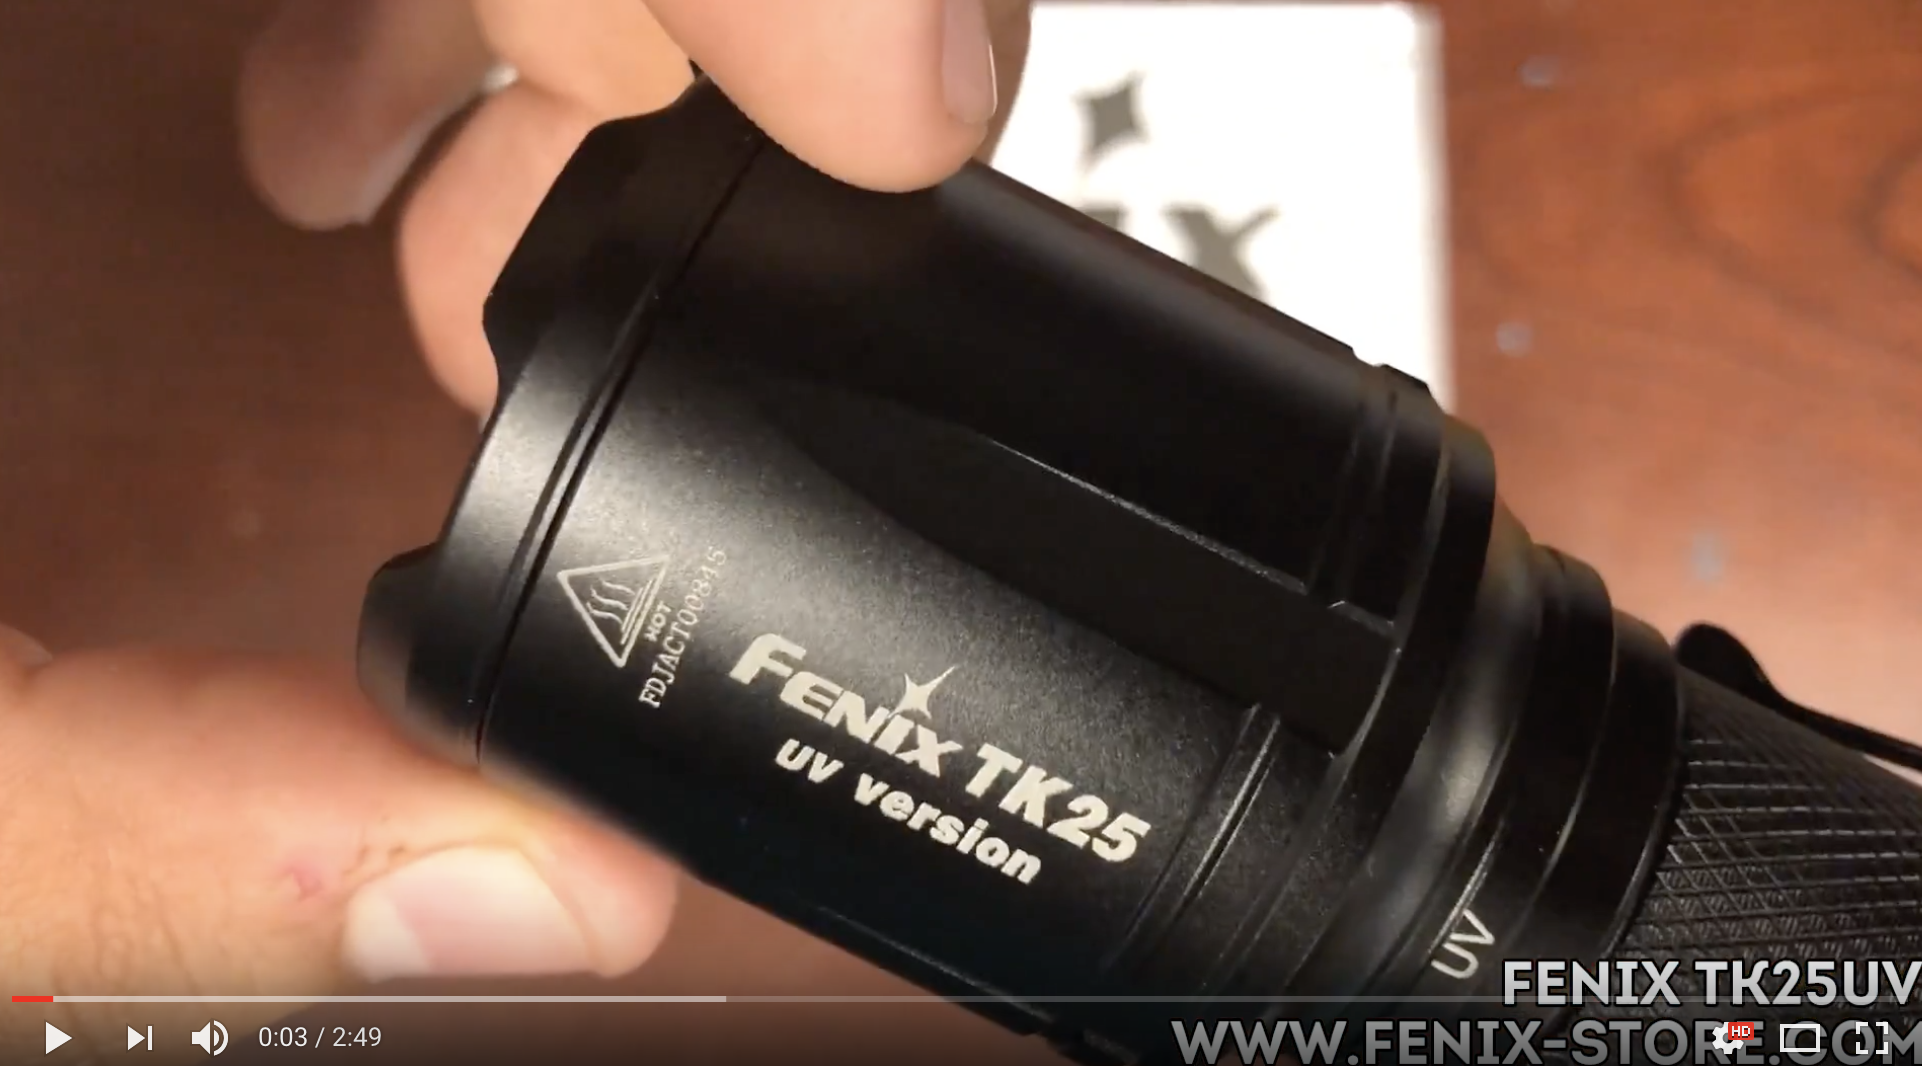 Fenix TK75UV LED Flashlight